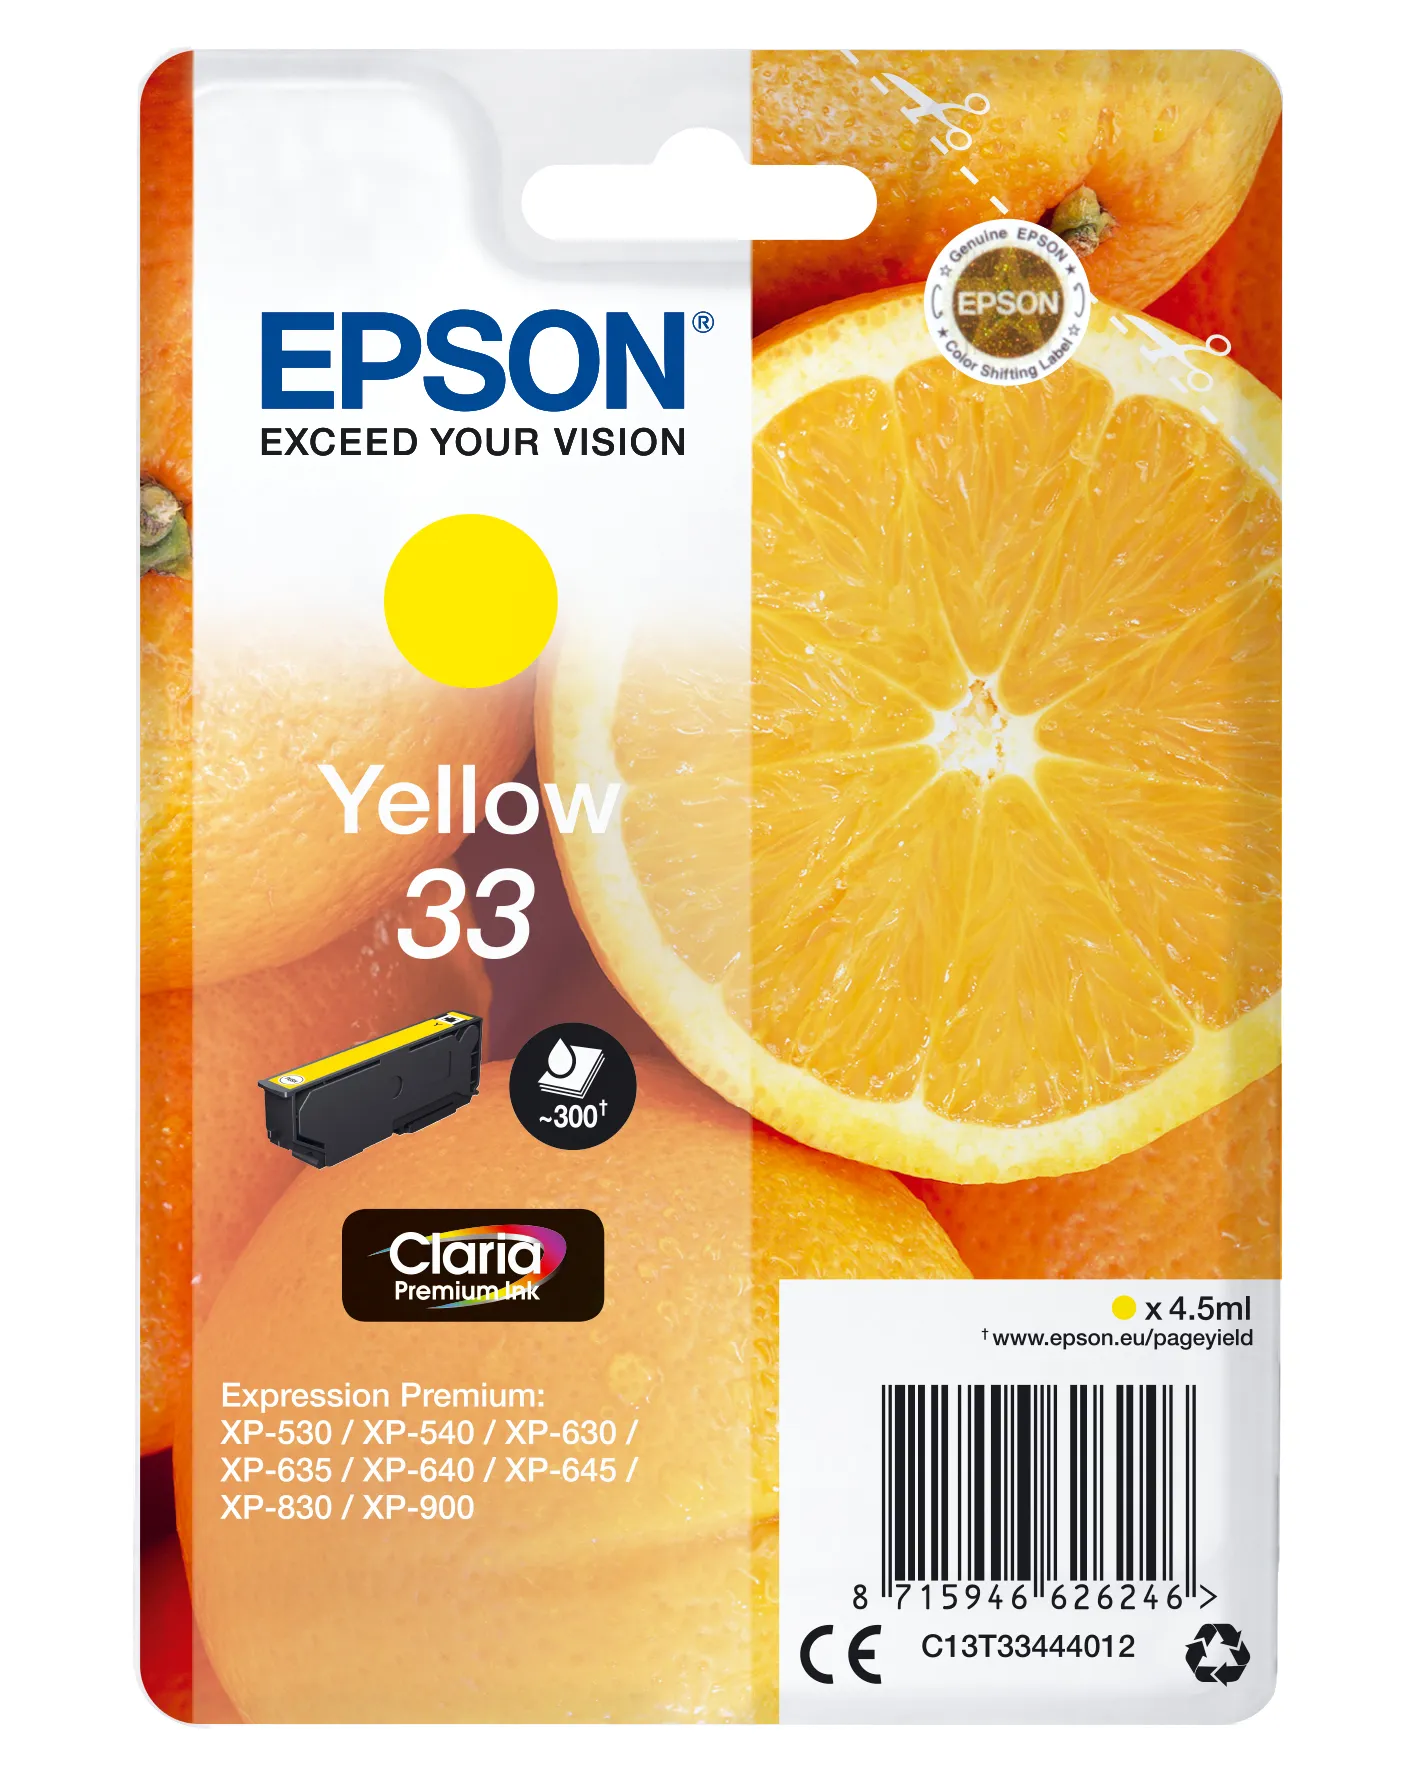 Achat EPSON Cartouche Oranges Encre Claria Premium Jaune sur hello RSE - visuel 5